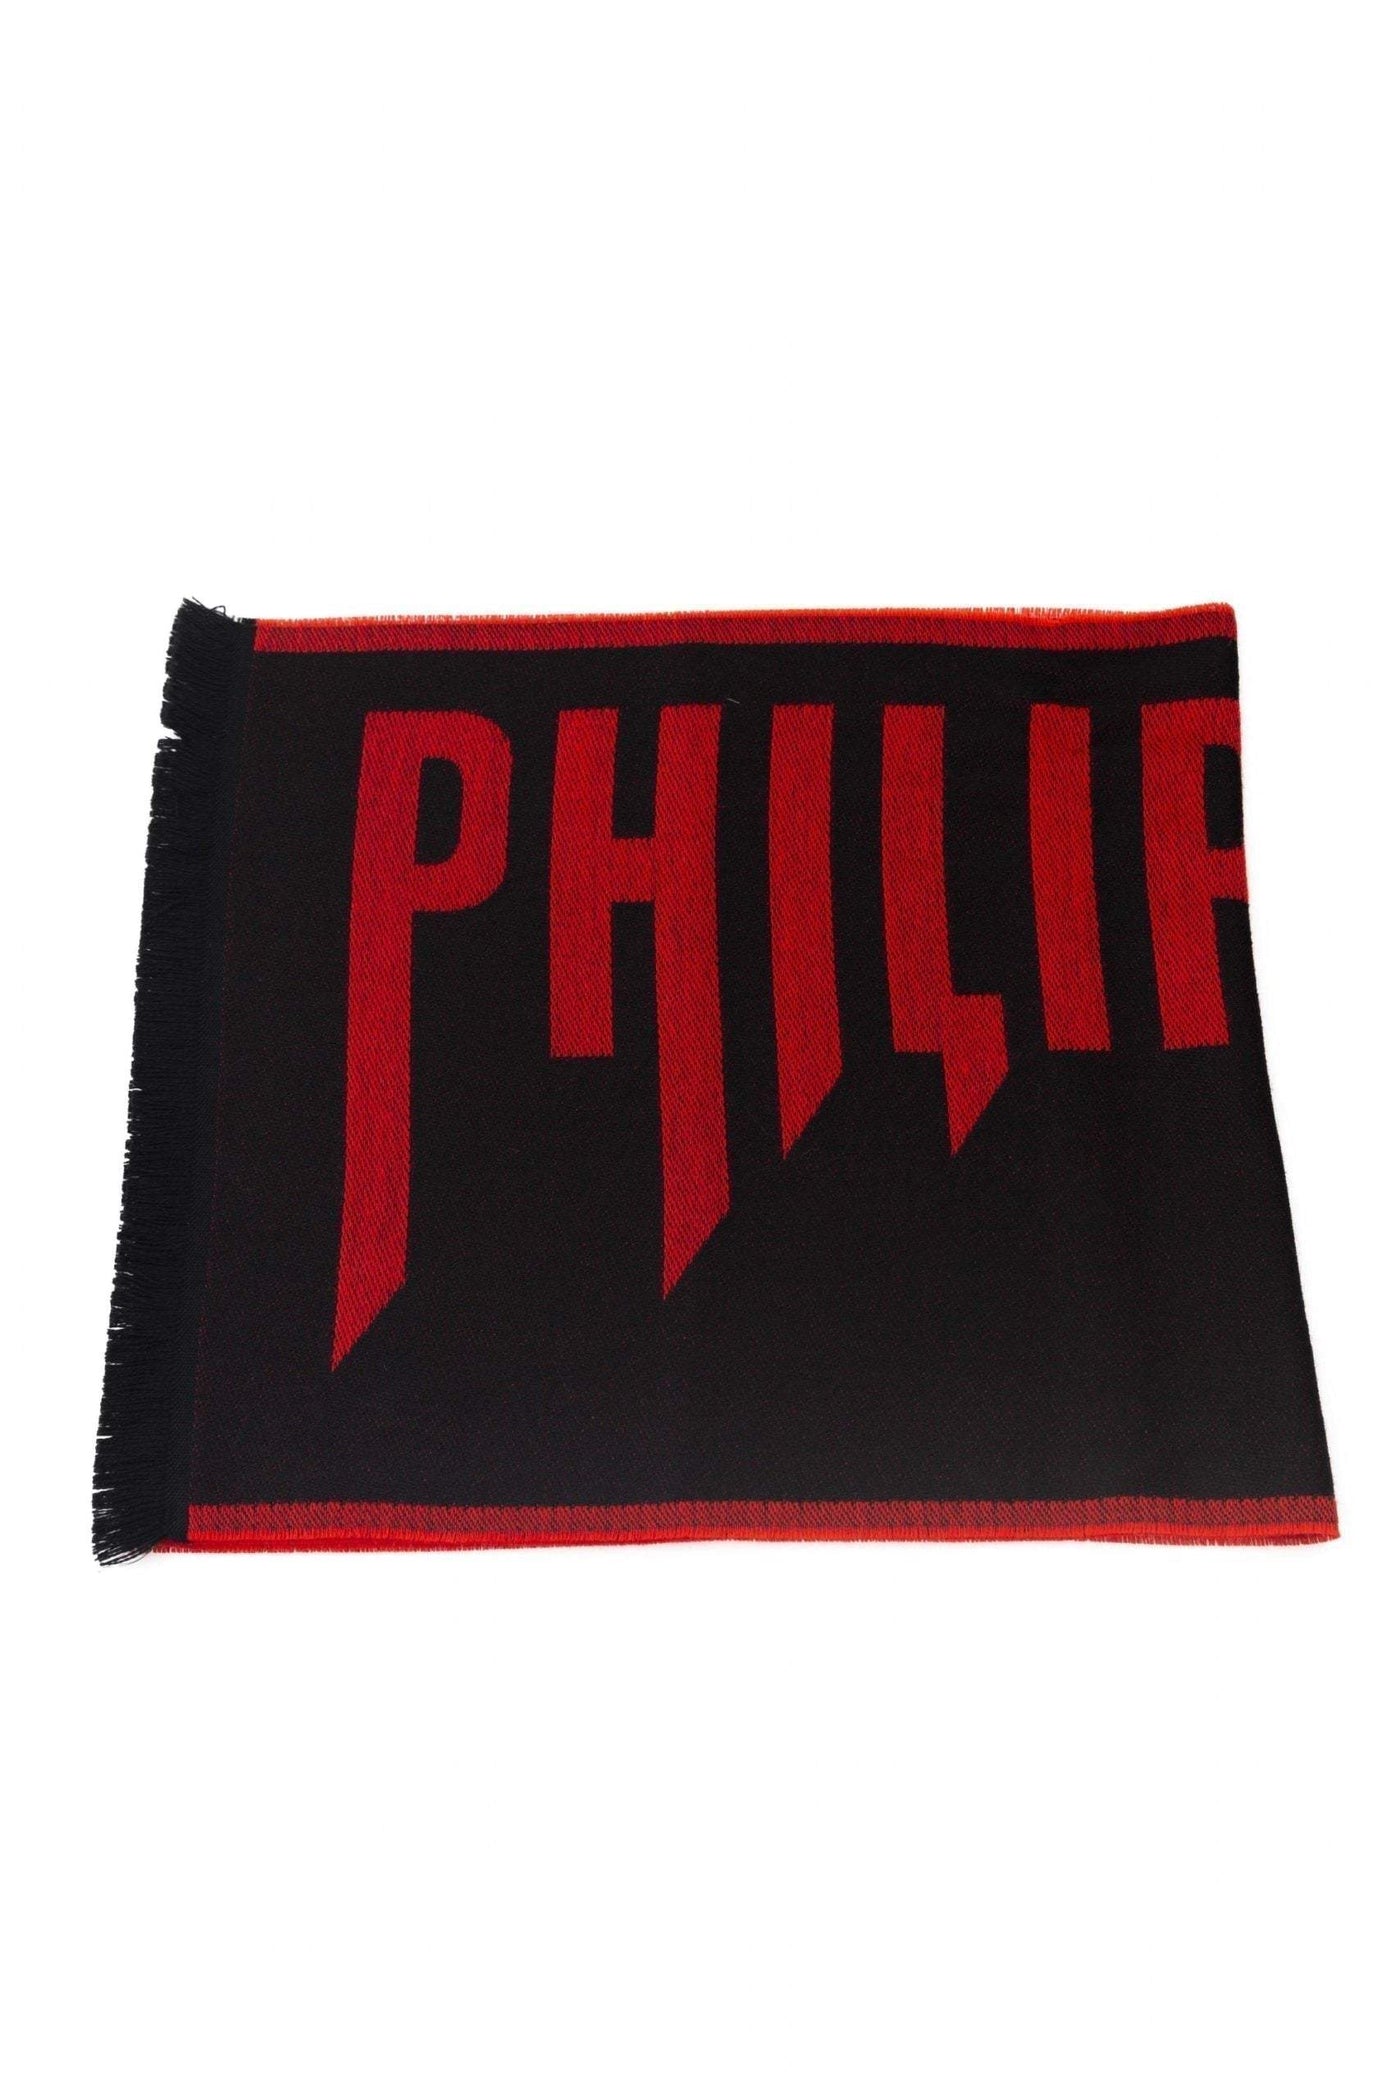 Philipp Plein Red Wool Scarf #men, feed-1, Philipp Plein, Red, Scarves - Men - Accessories at SEYMAYKA